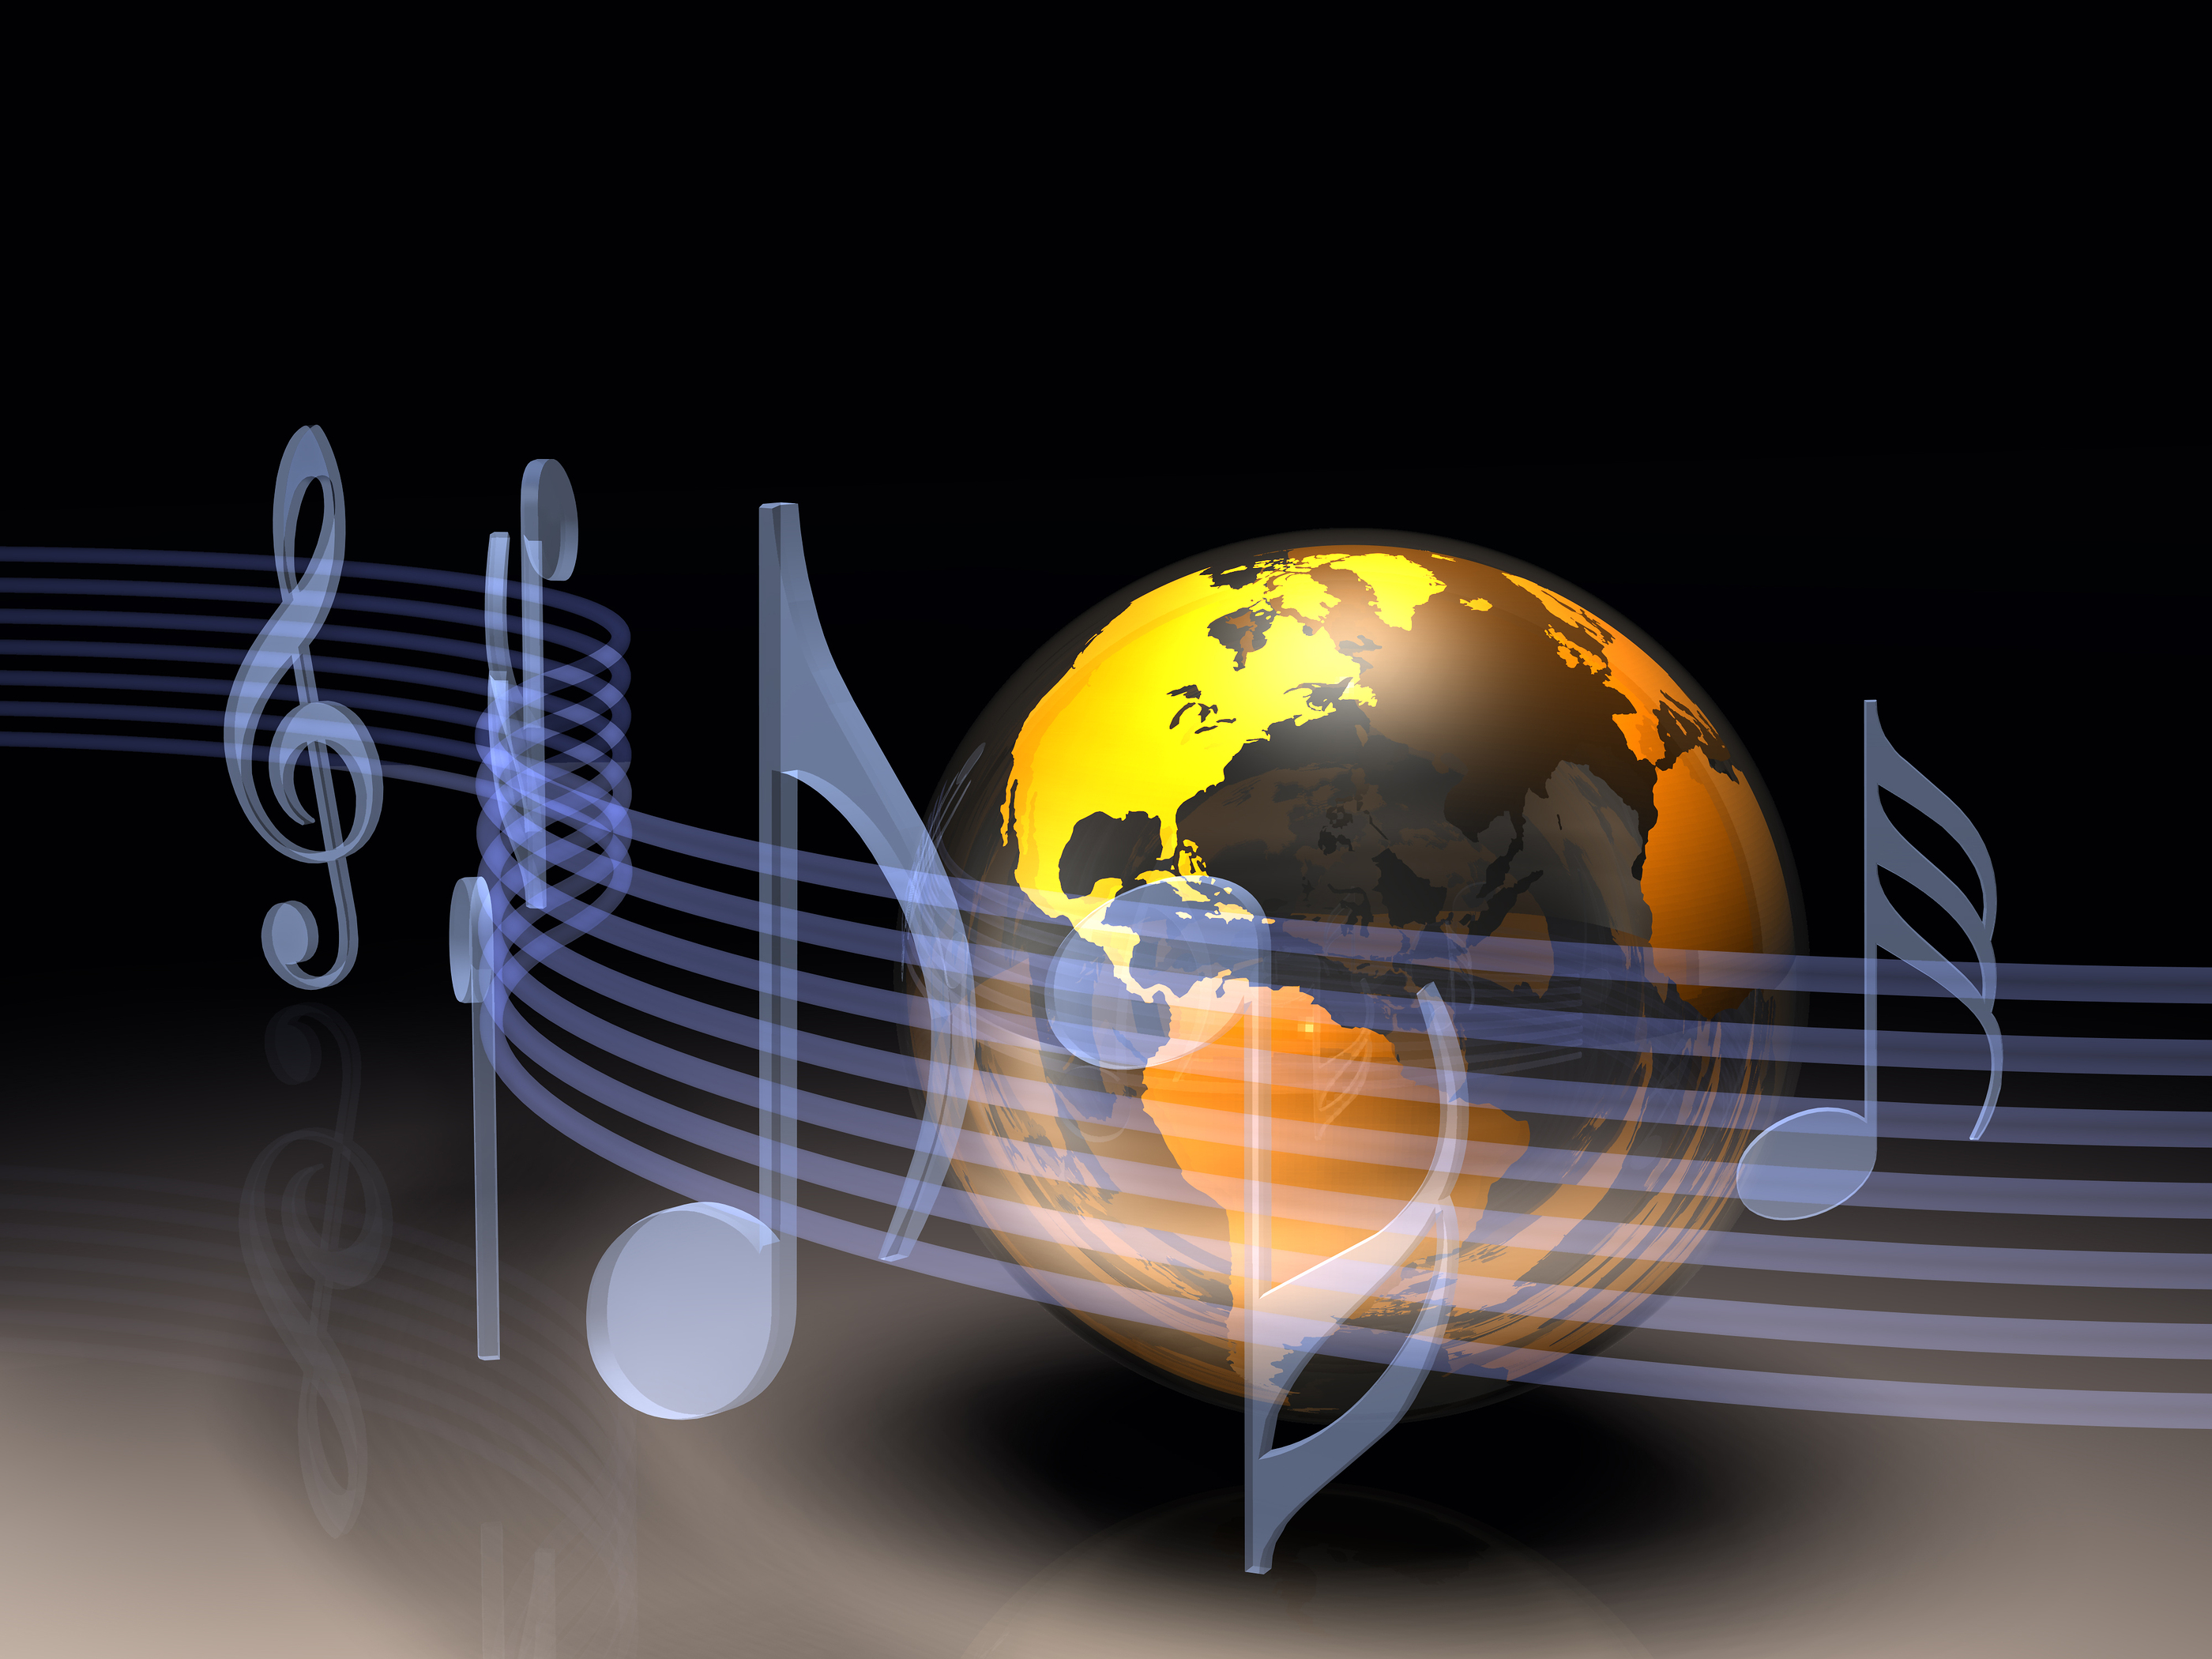 Войди в мир музыки. Музыкальная Планета. Музыкальный мир. Музыкальный земной шар. Путешествие в мир музыки.